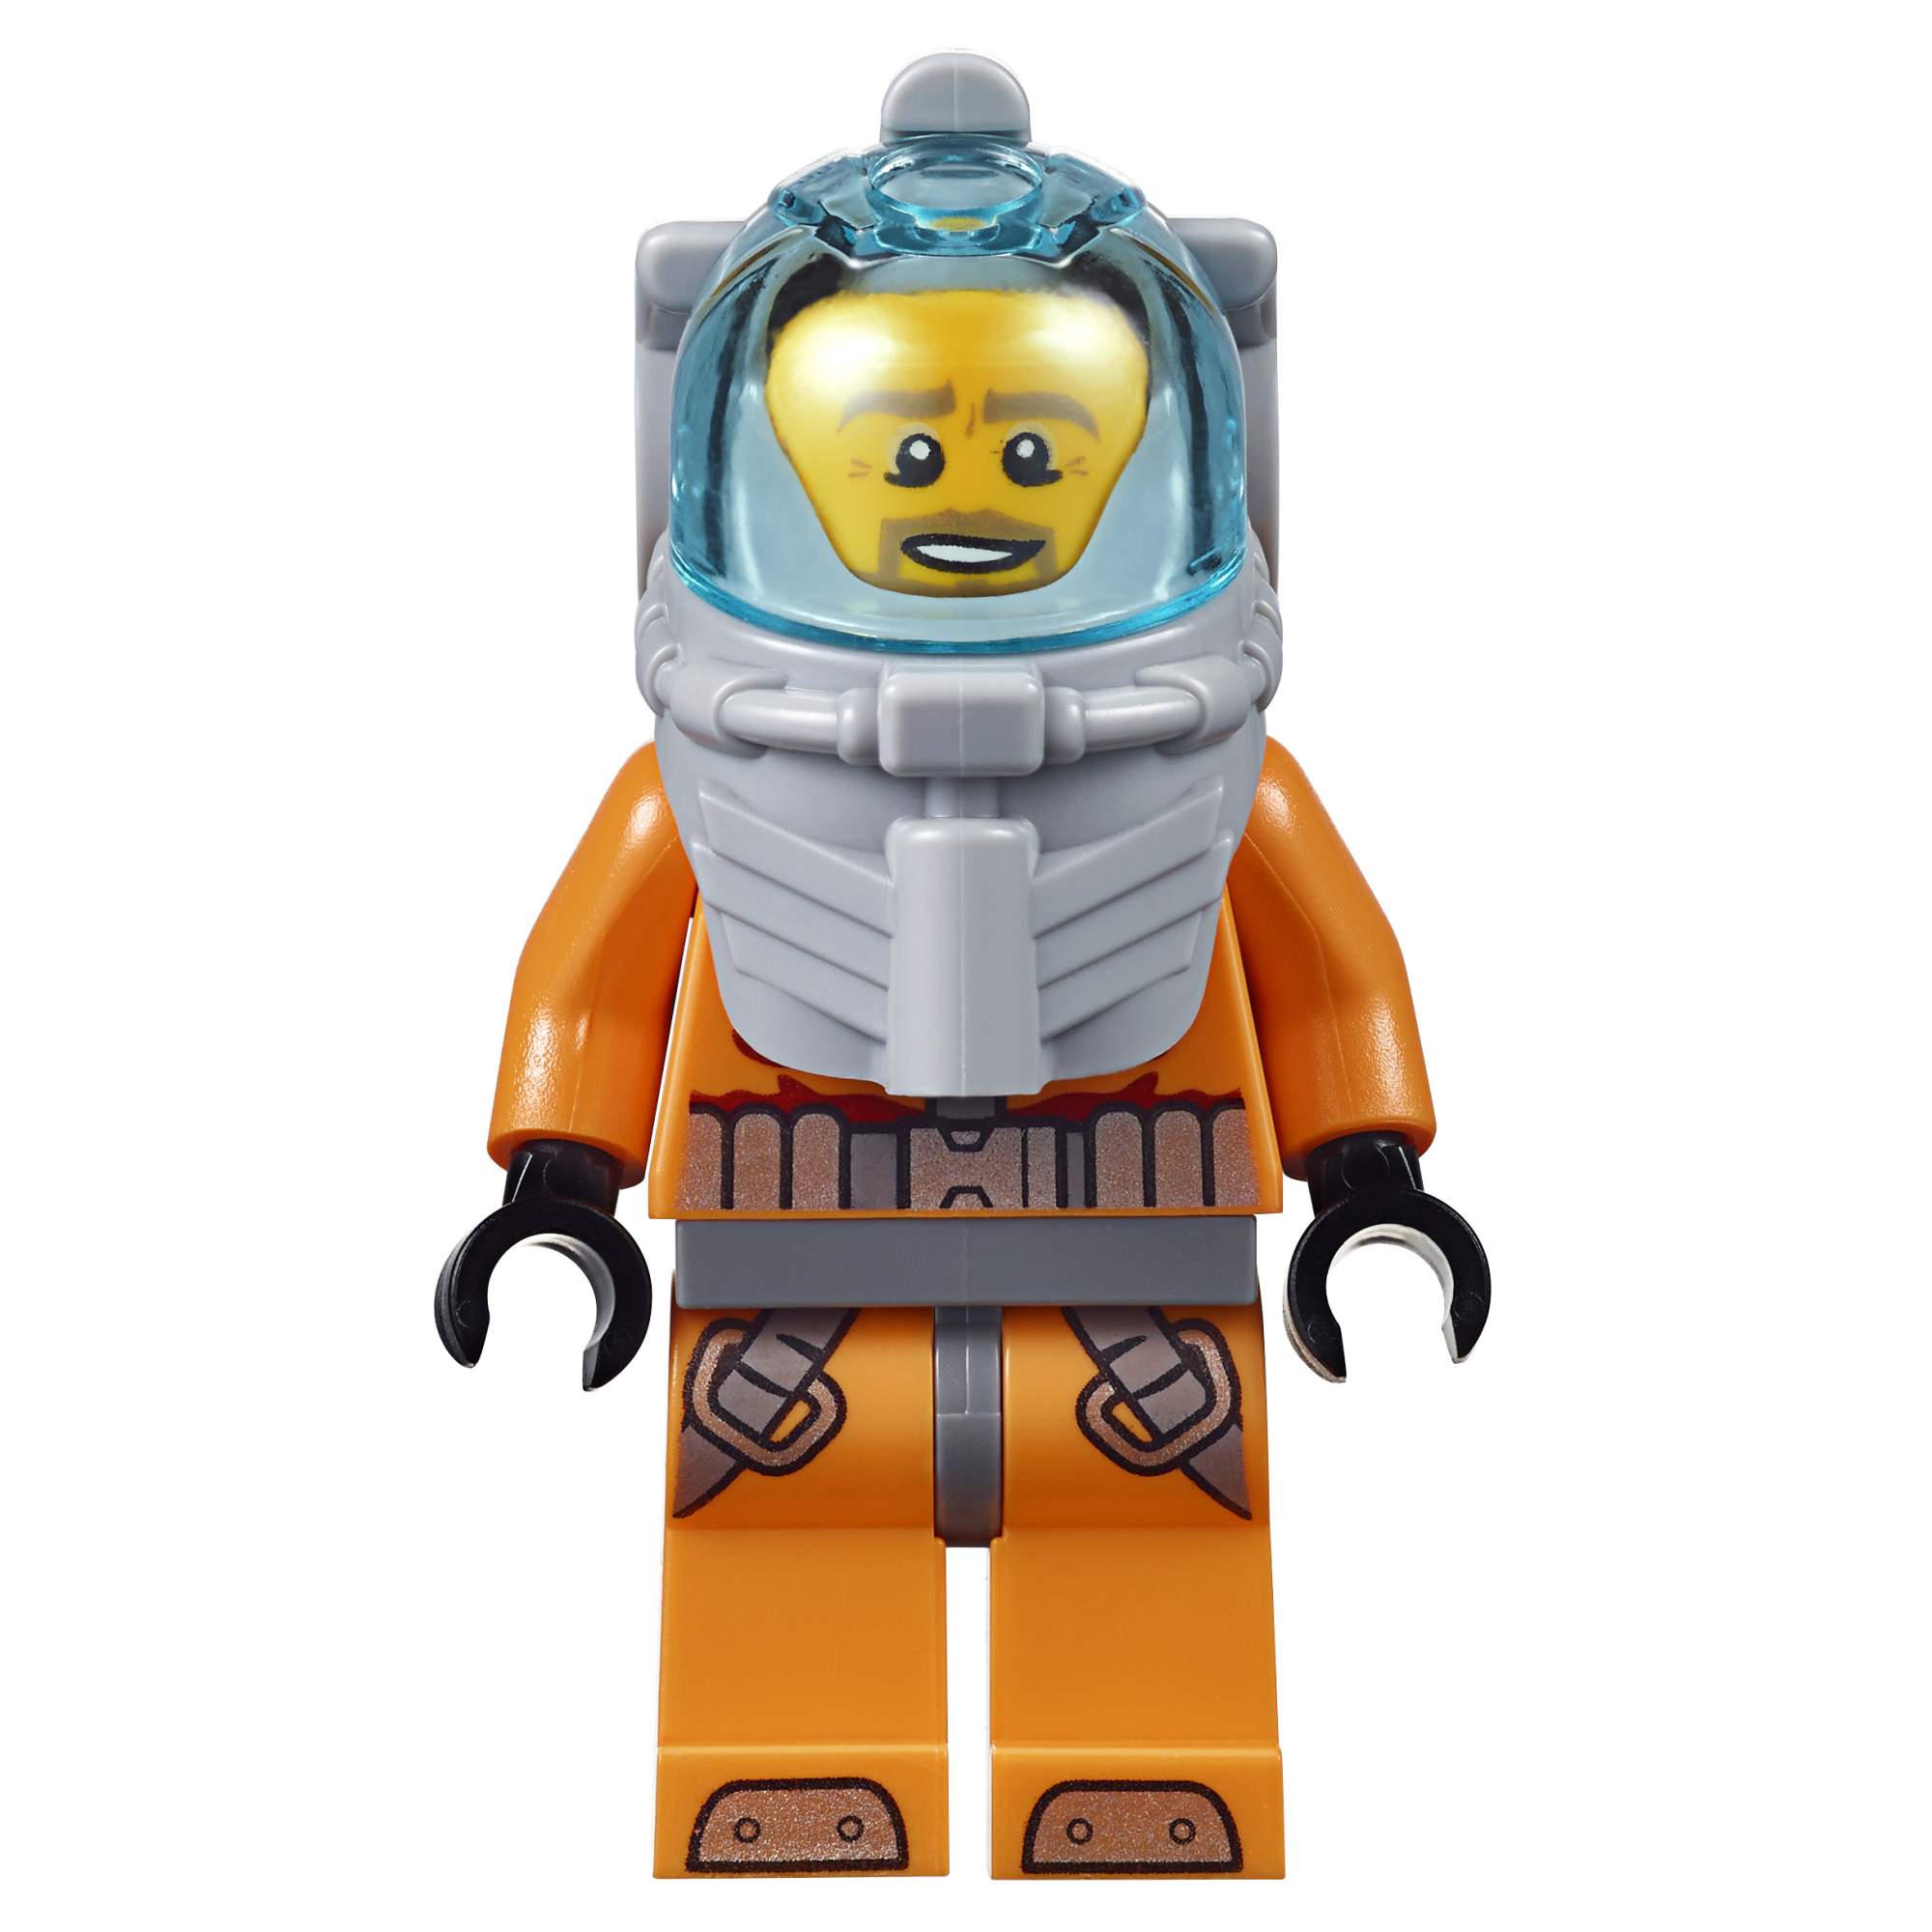 Конструктор LEGO City Deep Sea Explorers Глубоководная исследовательская база (60096)